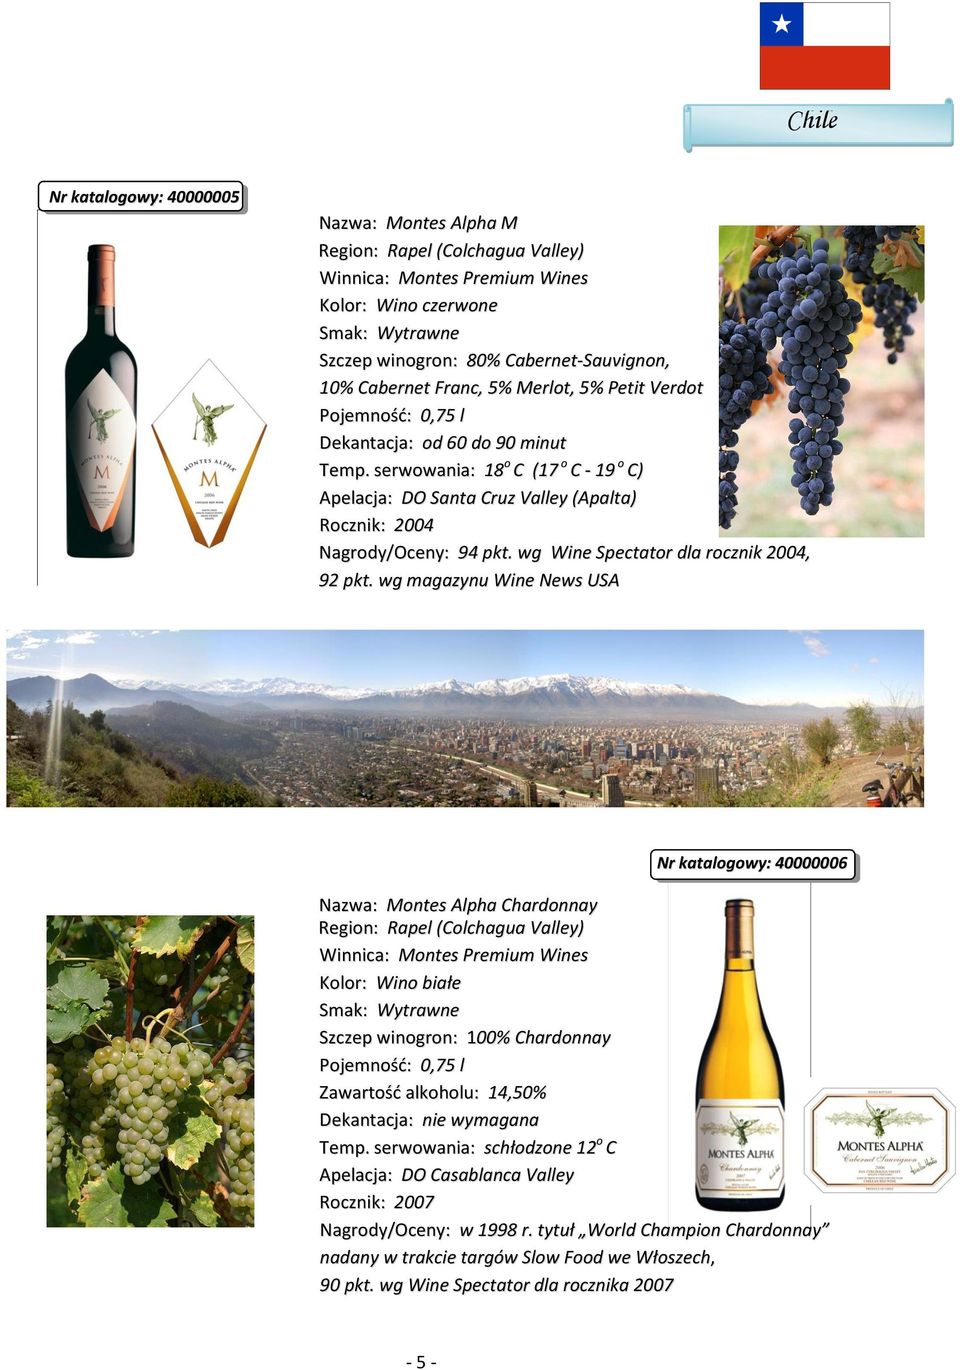 wg magazynu Wine News USA Nr katalogowy: 40000006 Nazwa: Montes Alpha Chardonnay Region: Rapel (Colchagua Valley) Winnica: Montes Premium Wines Szczep winogron: 100% Chardonnay Zawartość alkoholu: